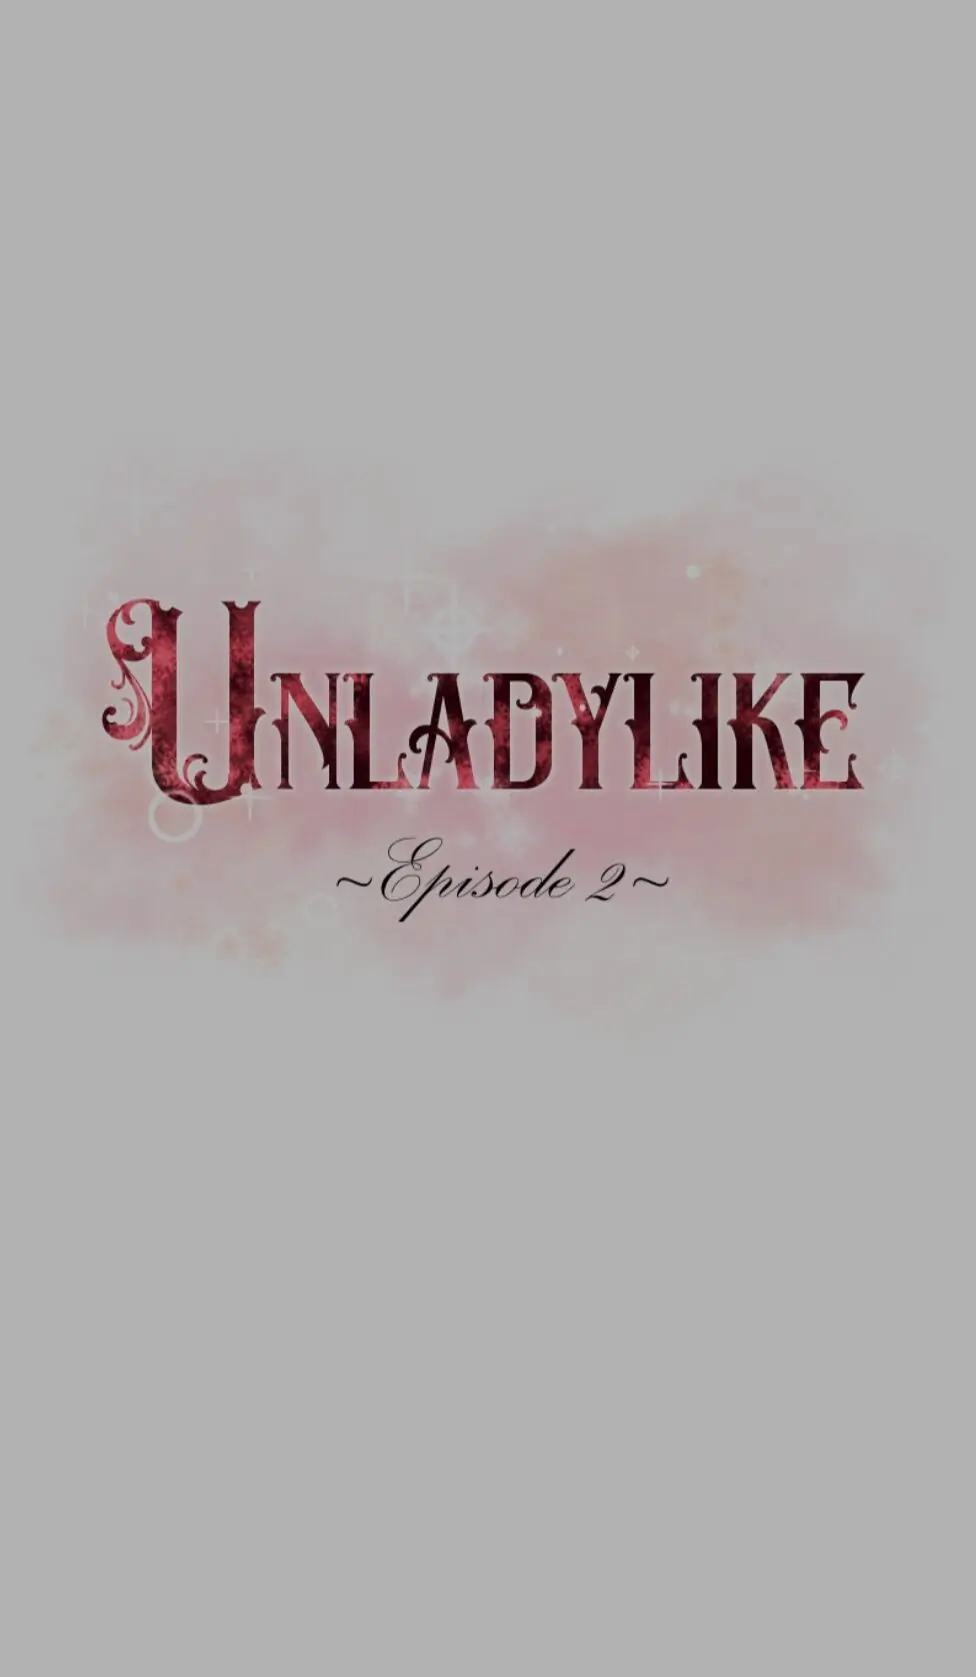 Unladylike chapter 4